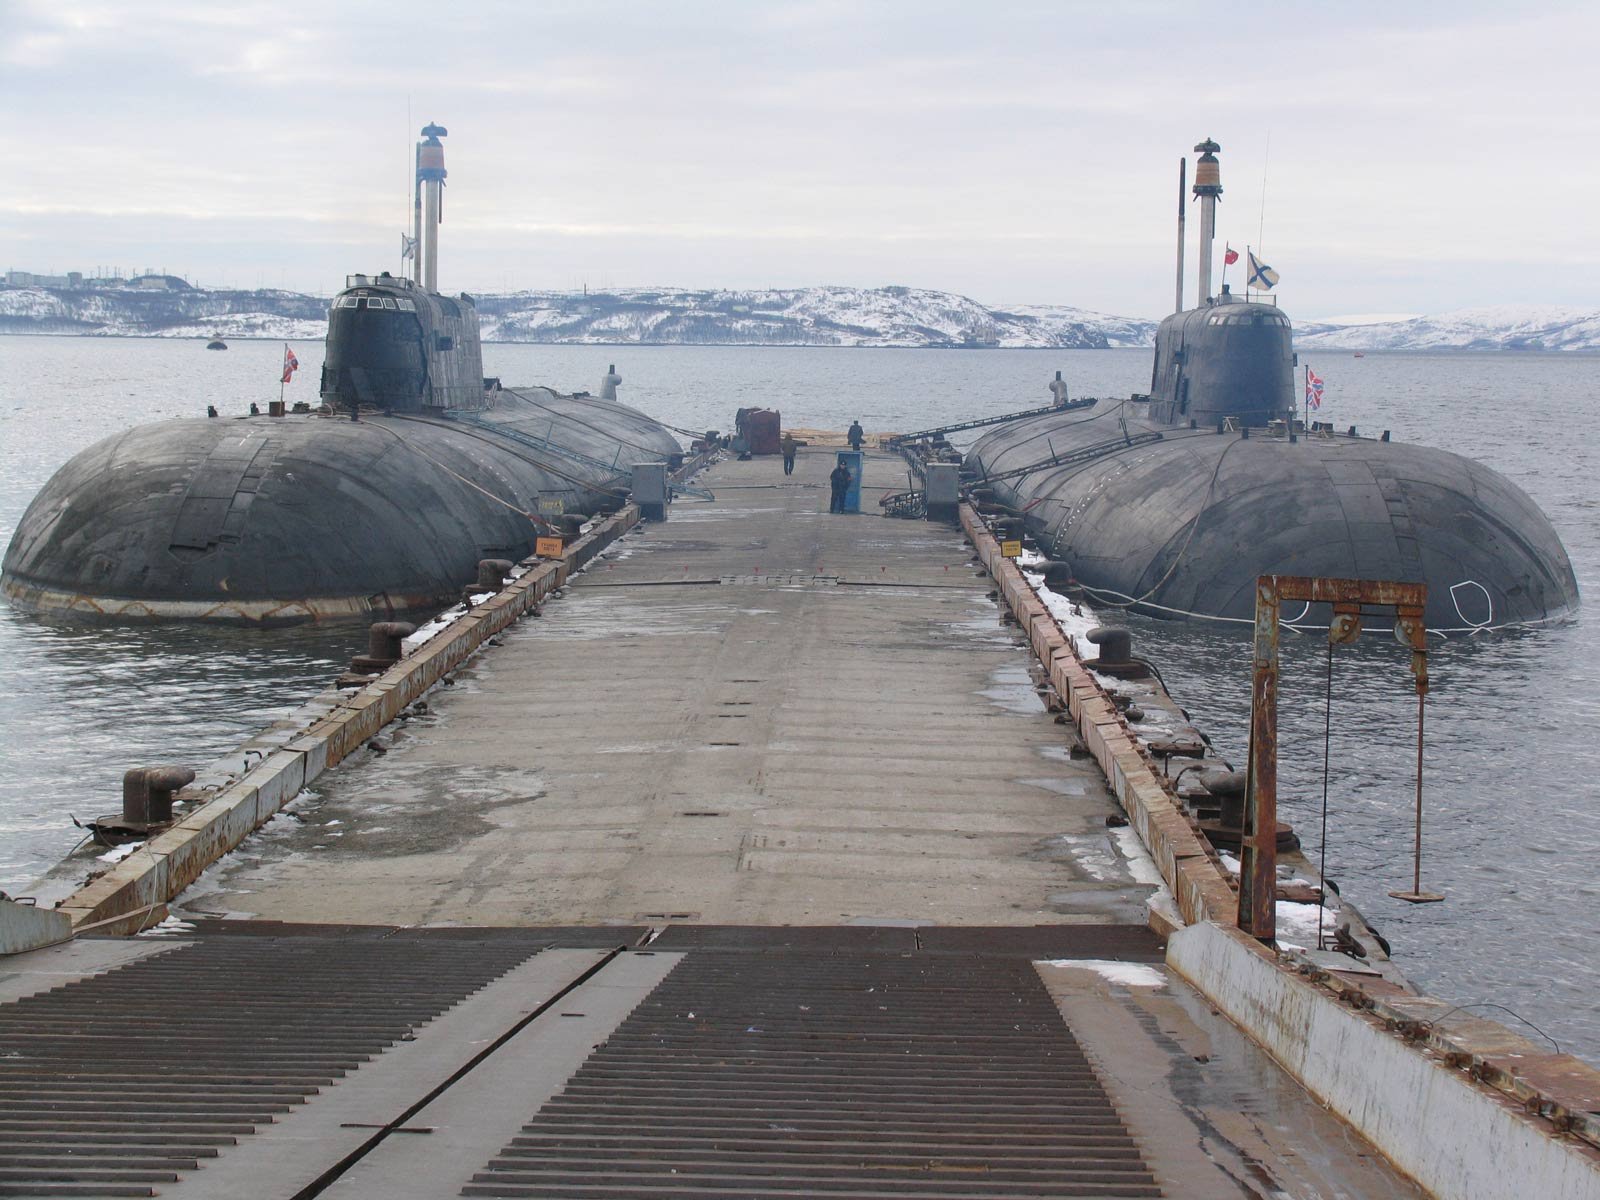 Пл пр т. АПЛ проекта 949а Антей. АПЛ проект 949 гранит. АПЛ проекта 949а («Антей») «Иркутск». Подводные лодки Северного флота России.